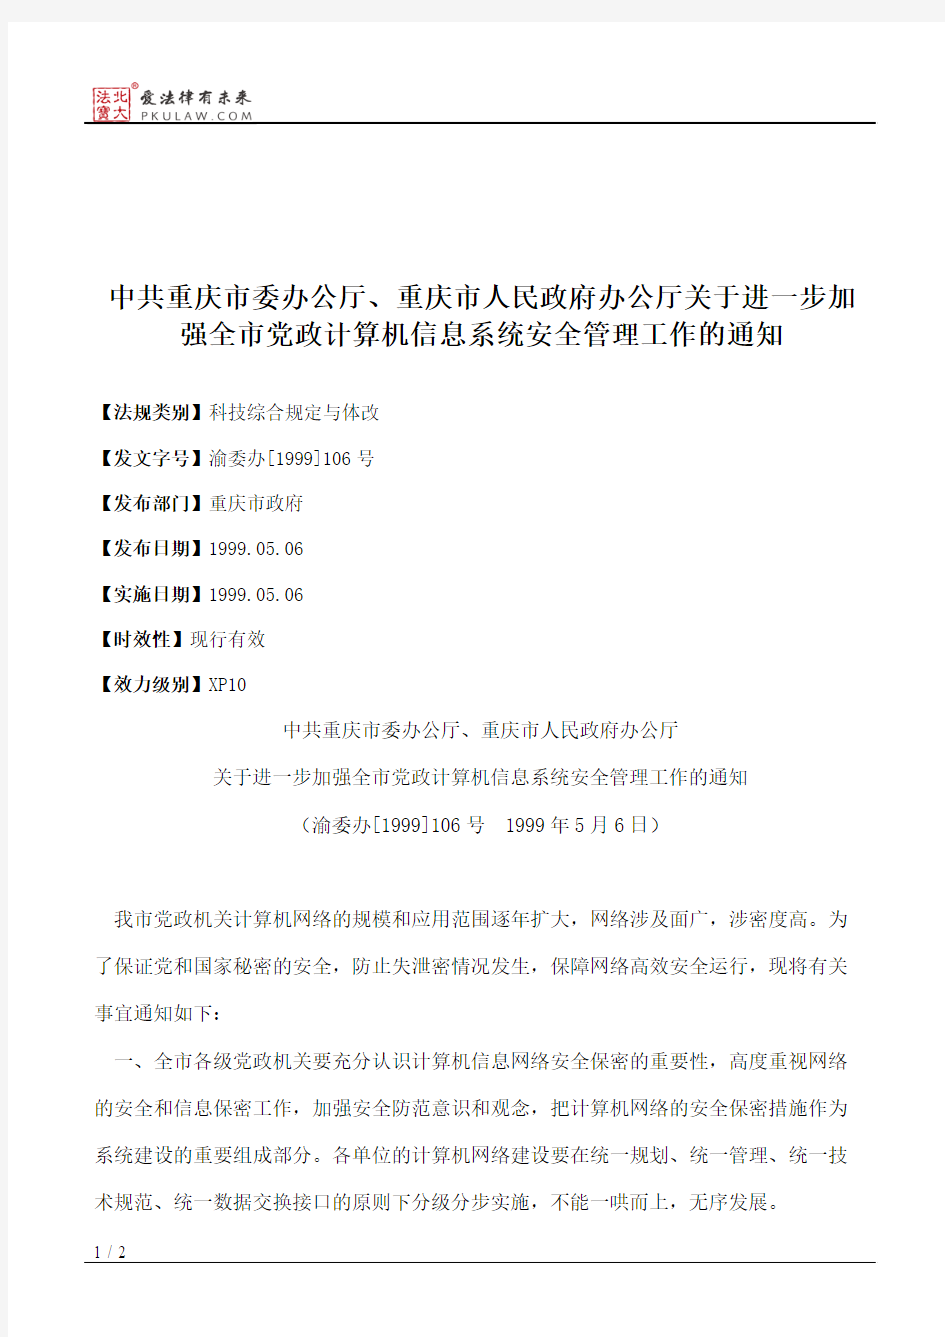 中共重庆市委办公厅、重庆市人民政府办公厅关于进一步加强全市党